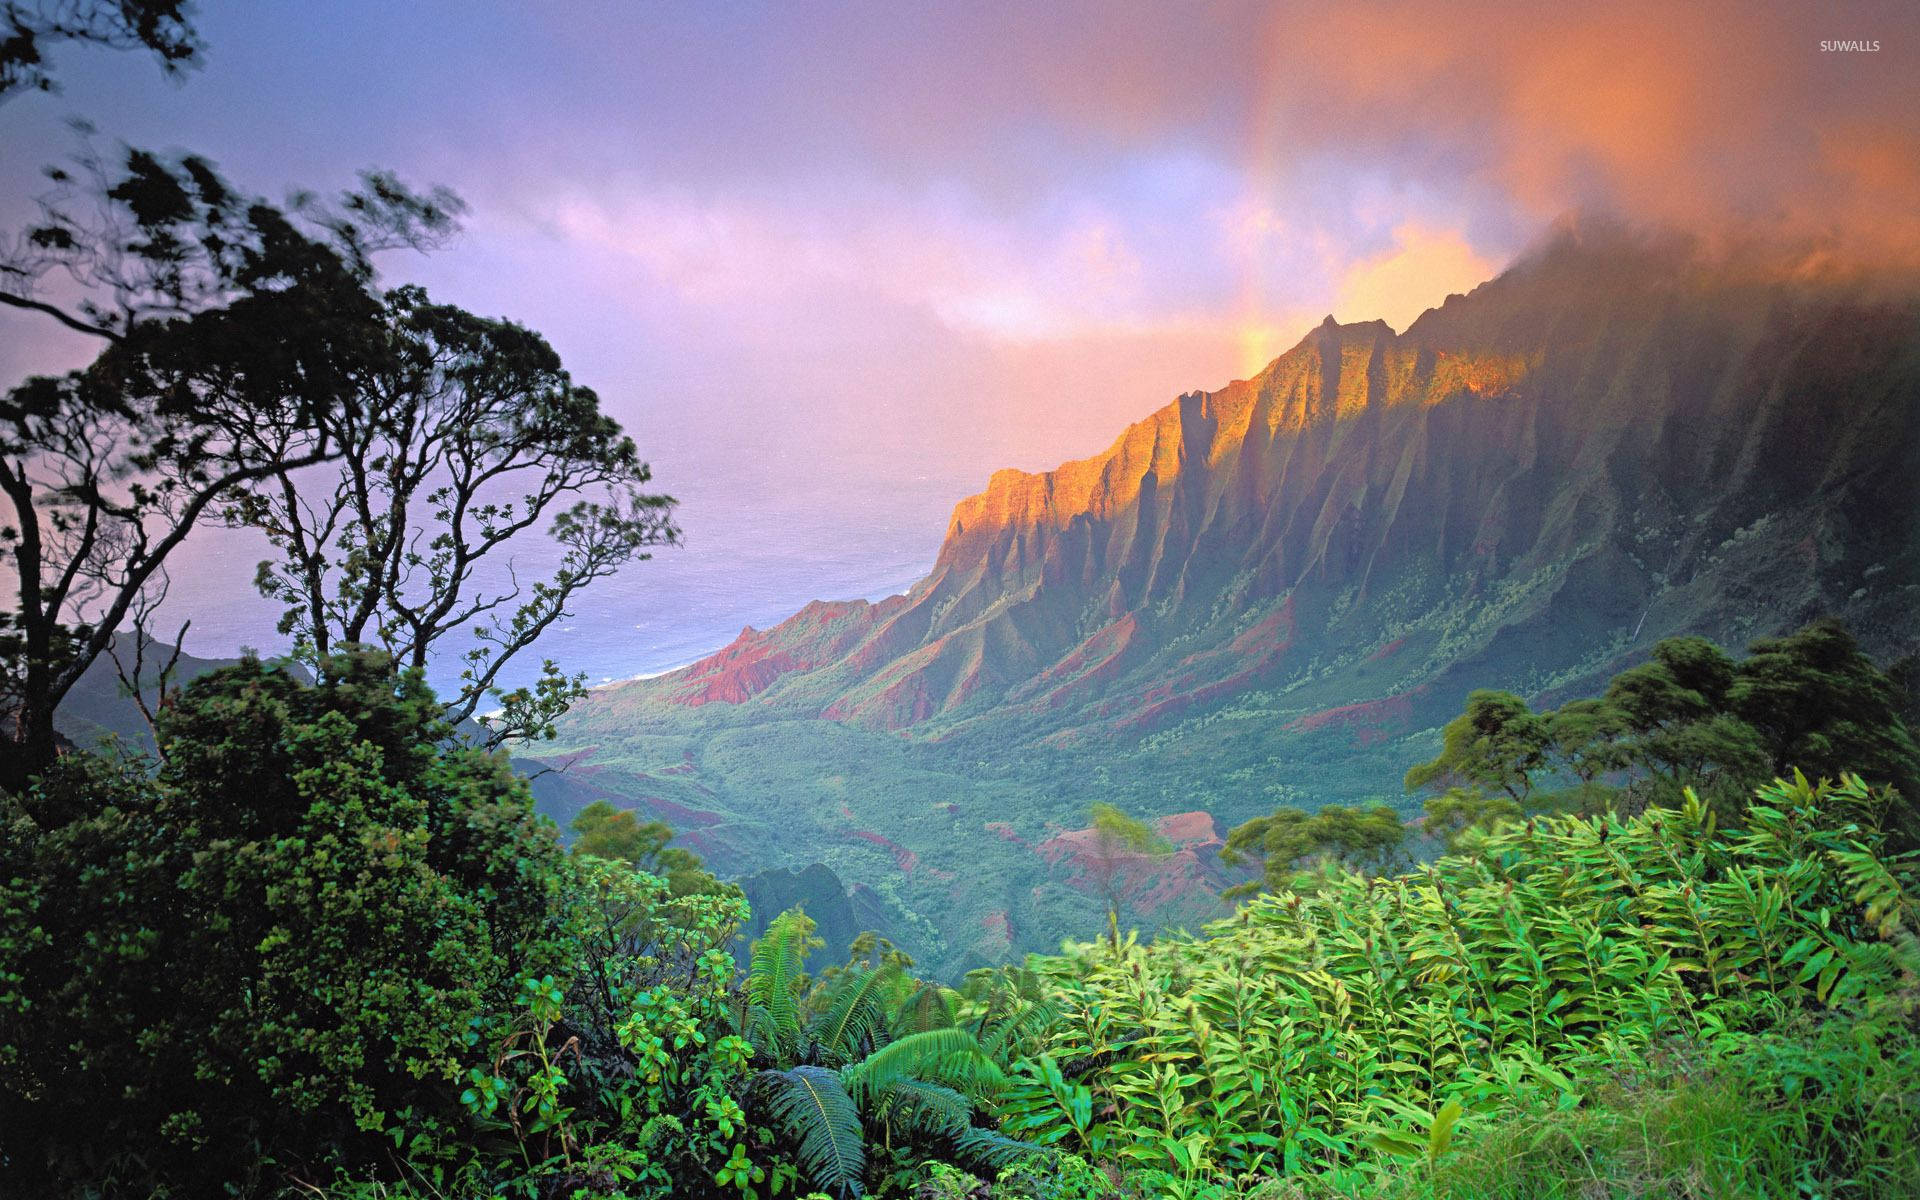 Hawaii Kalalau Valley Background